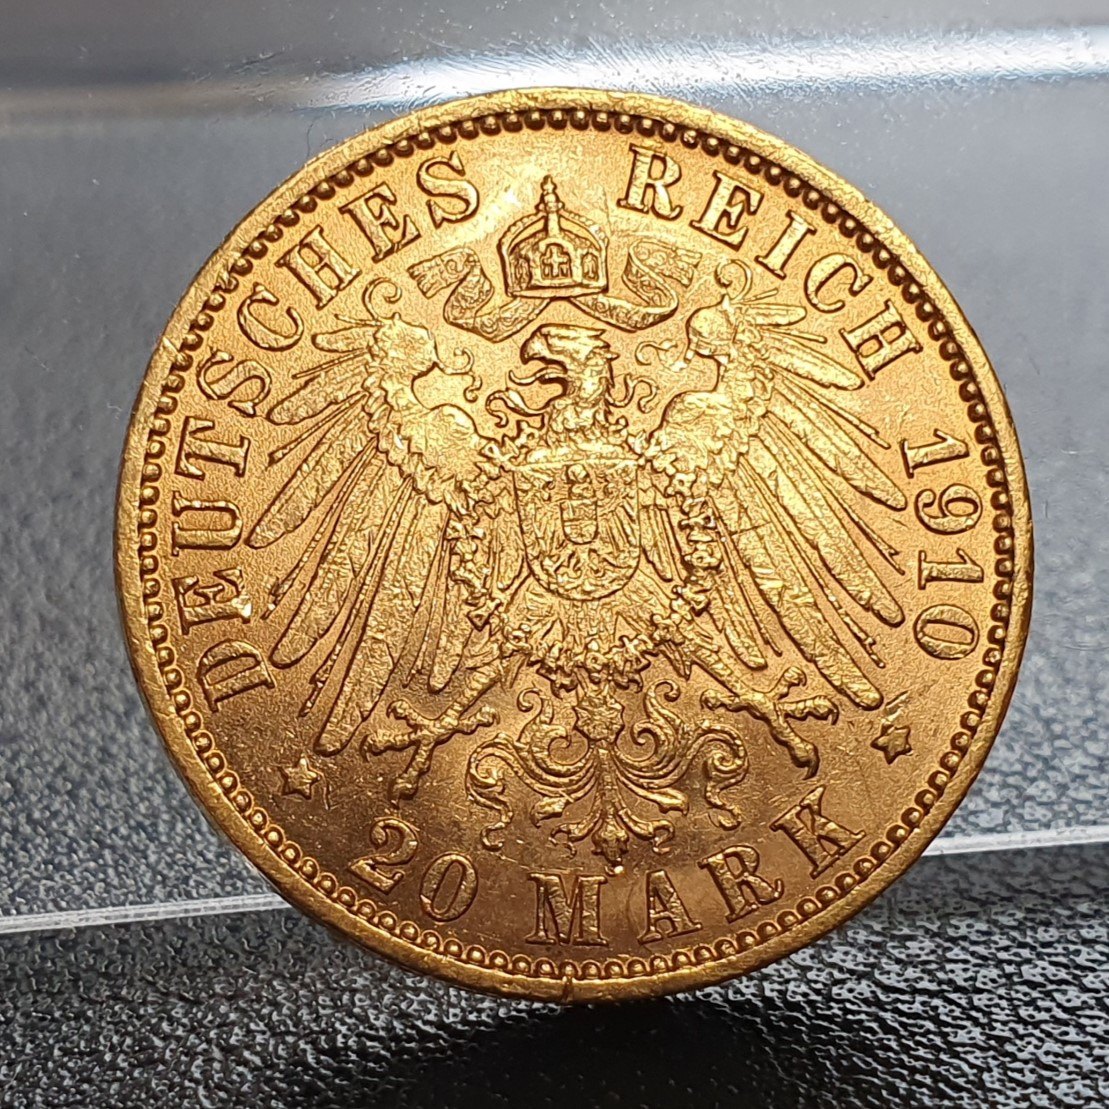  Kaiserreich 20 Mark 1910 J Wilhelm II Deutscher Kaiser König v. Preussen Goldmünze 7,17 g fein   